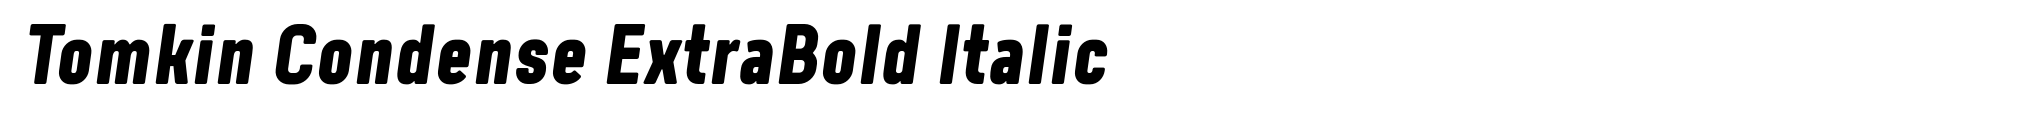 Tomkin Condense ExtraBold Italic image